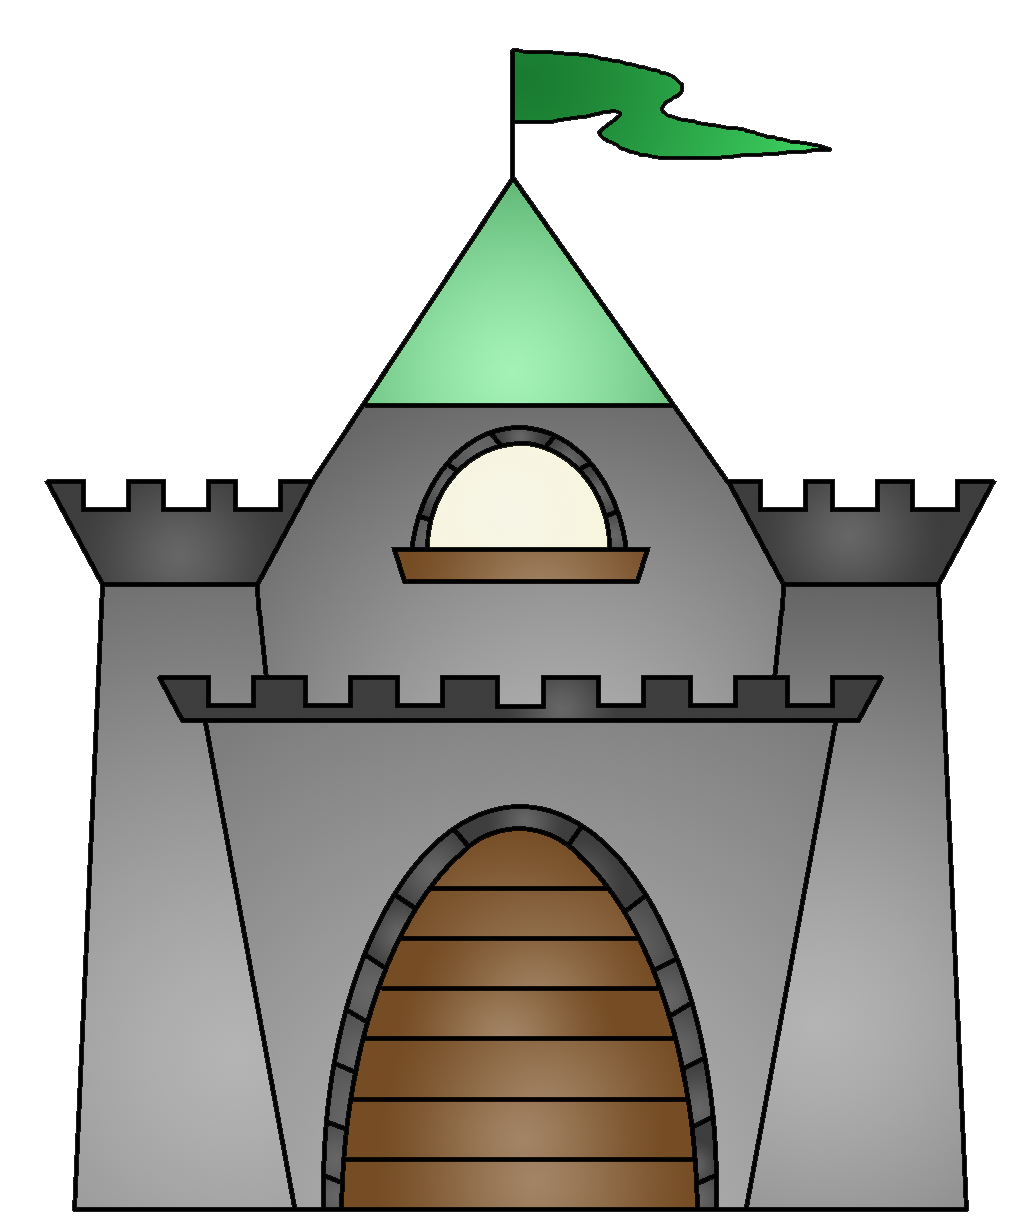 Fairytale castle house